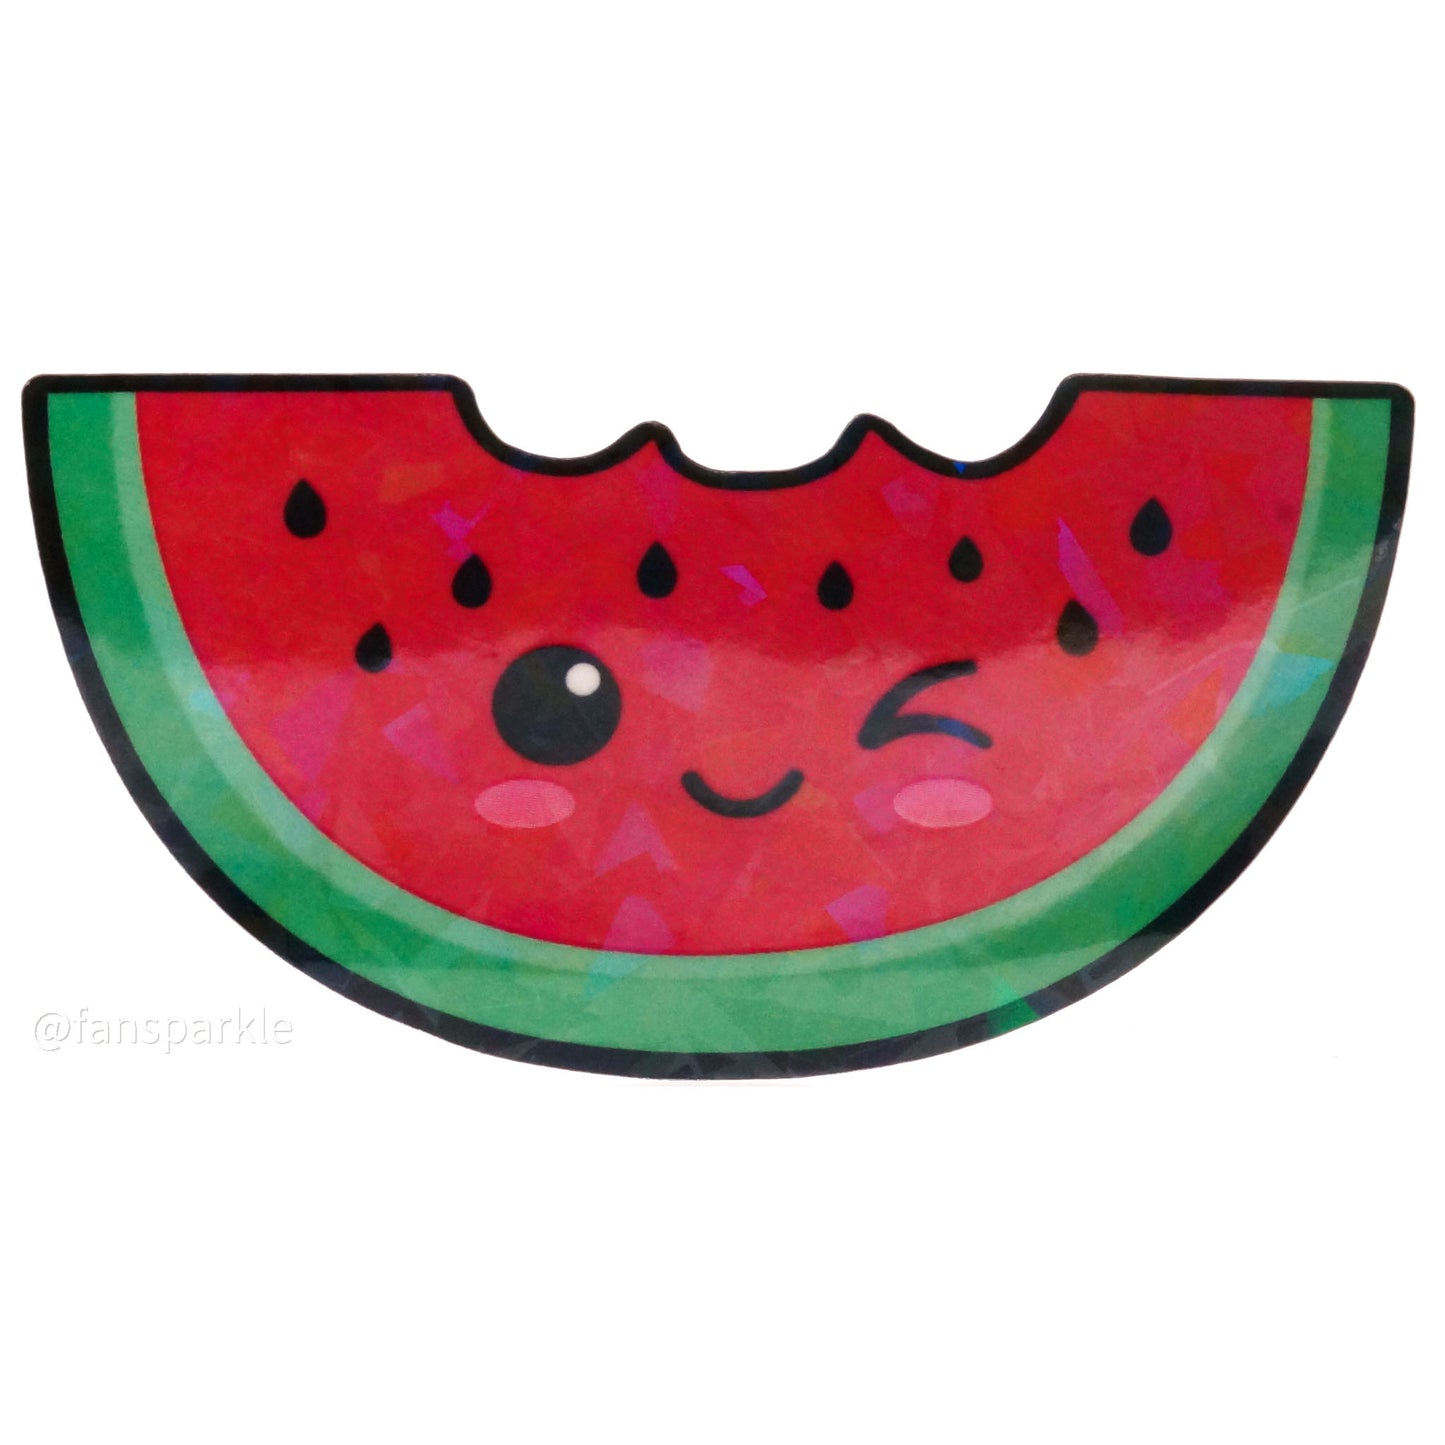 Kawaii Watermelon Sticker - Fan Sparkle